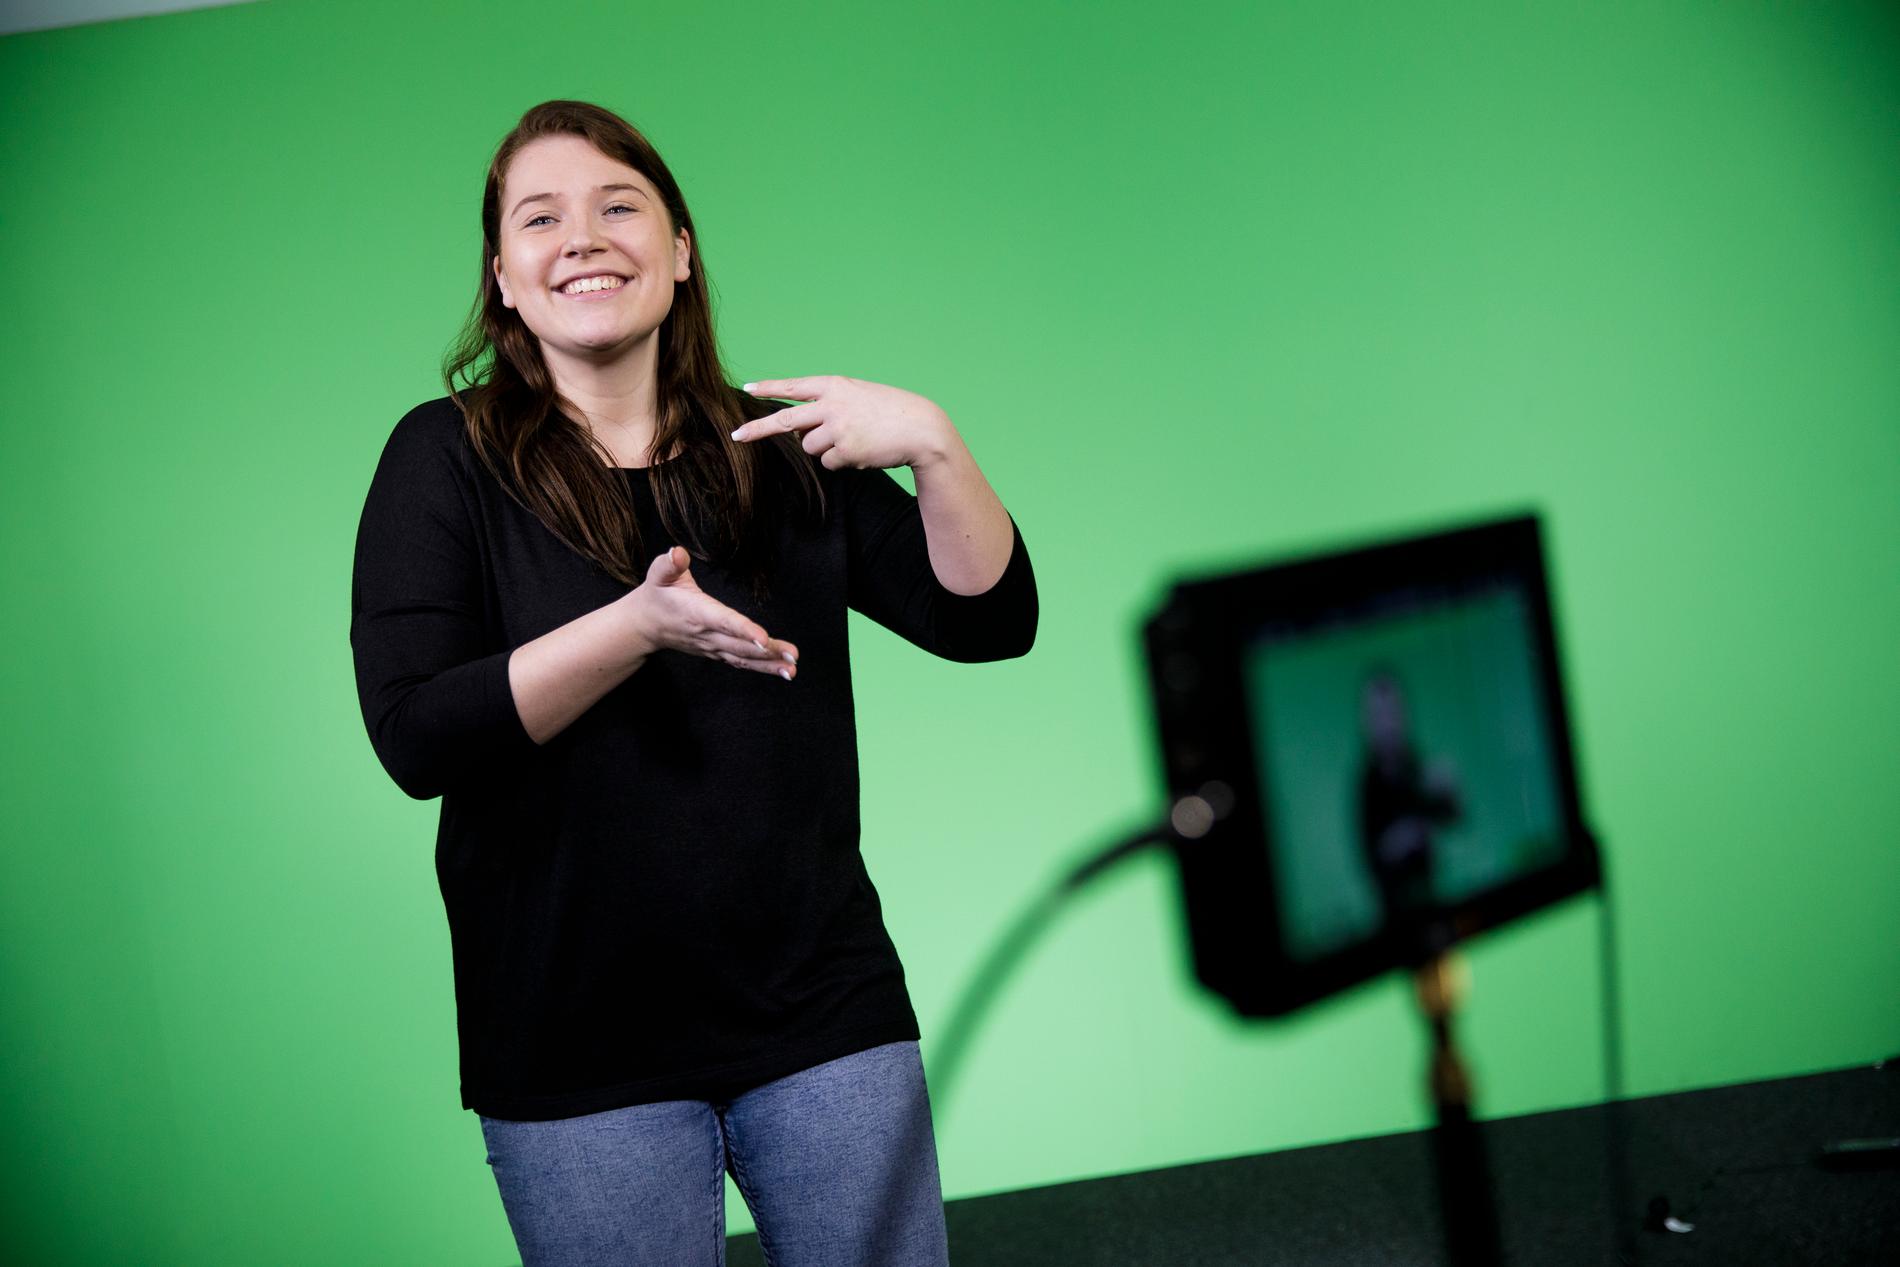 Jade Osbeck teckenspråksgestaltar några av låtarna i finalen av Melodifestivalen. Framför en ”green screen” gör hon sin version av låten. 